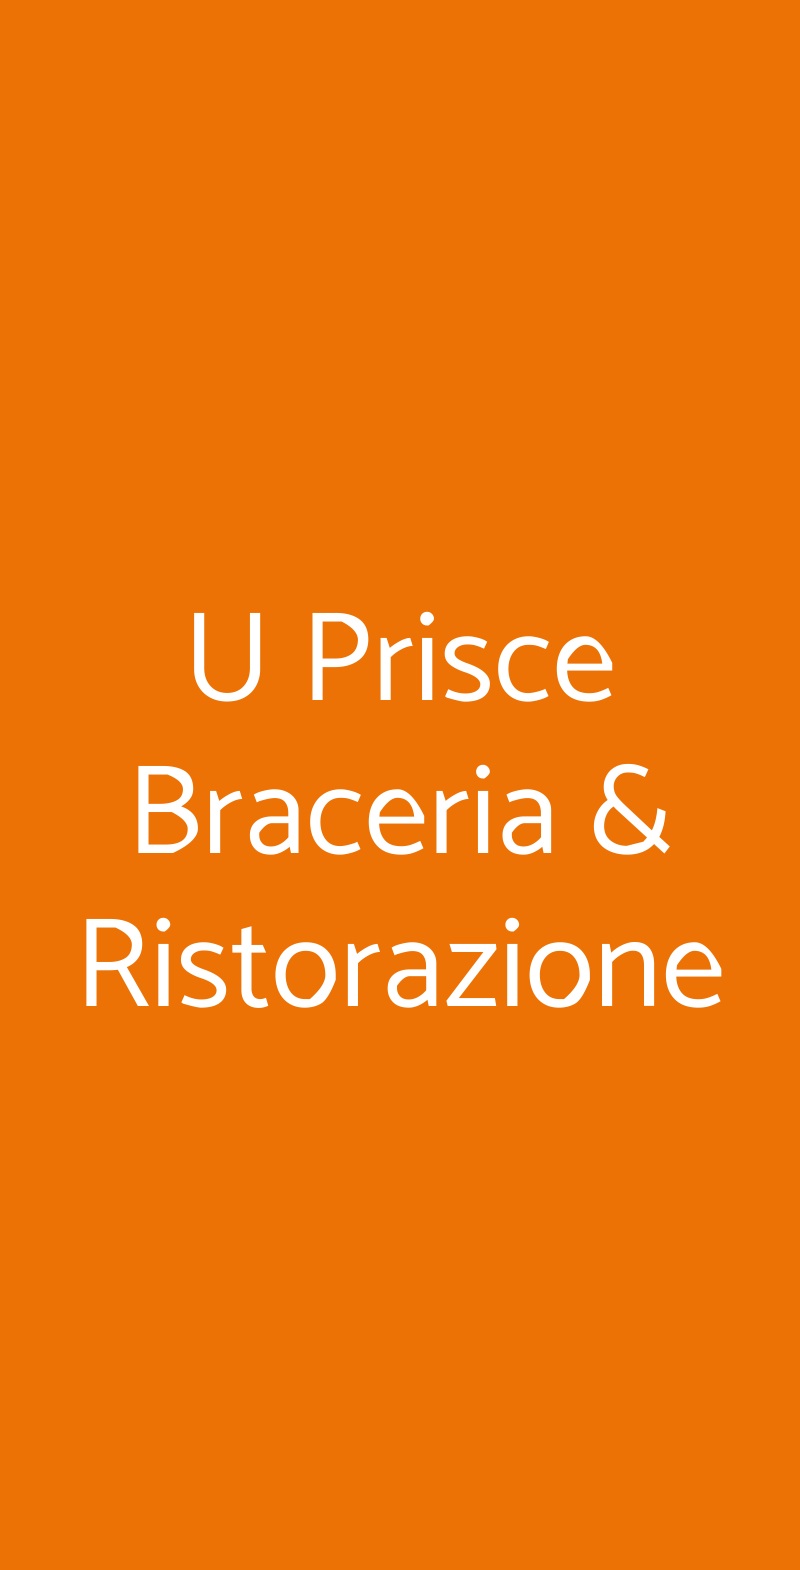 U Prisce Braceria & Ristorazione Ruvo Di Puglia menù 1 pagina